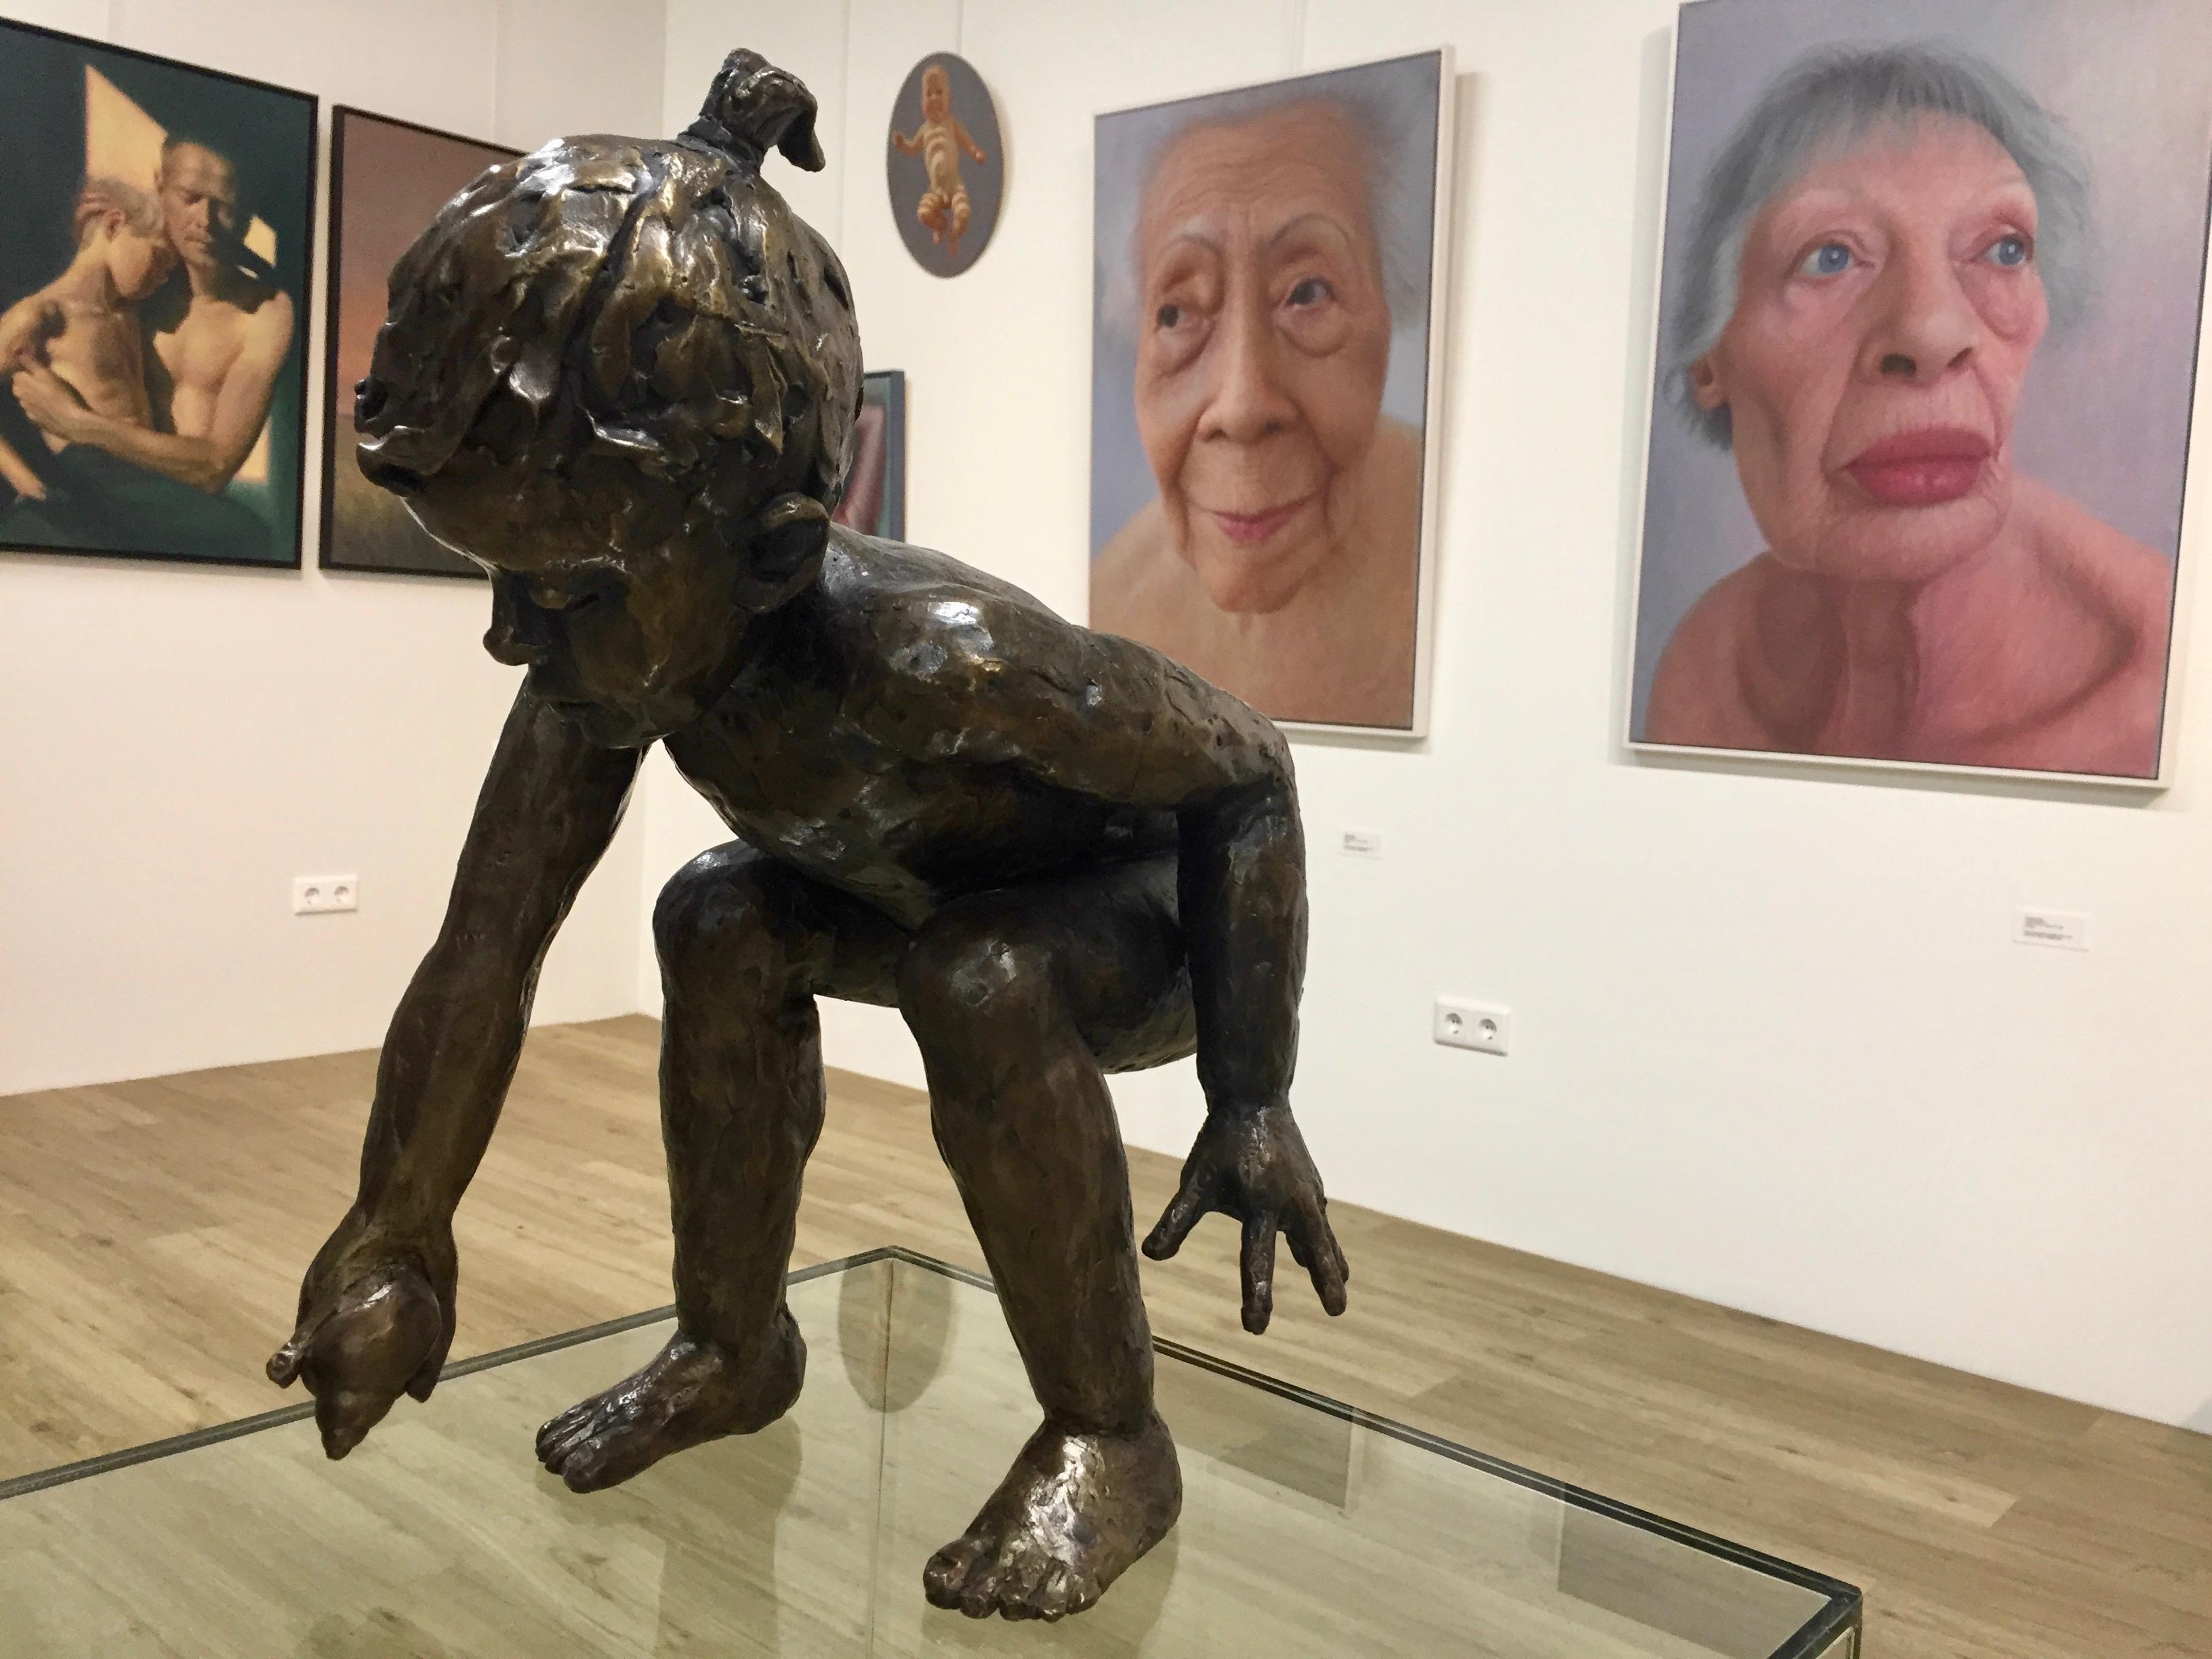 Bewegung in Bronze
Man kann Romee Kanis mit Fug und Recht als eine alte Bekannte der Galerie bezeichnen, denn ihre Arbeiten waren bis vor einigen Jahren regelmäßig in der Galerie zu sehen. Wir stellen diese Tradition in Ehren wieder her. Wir haben